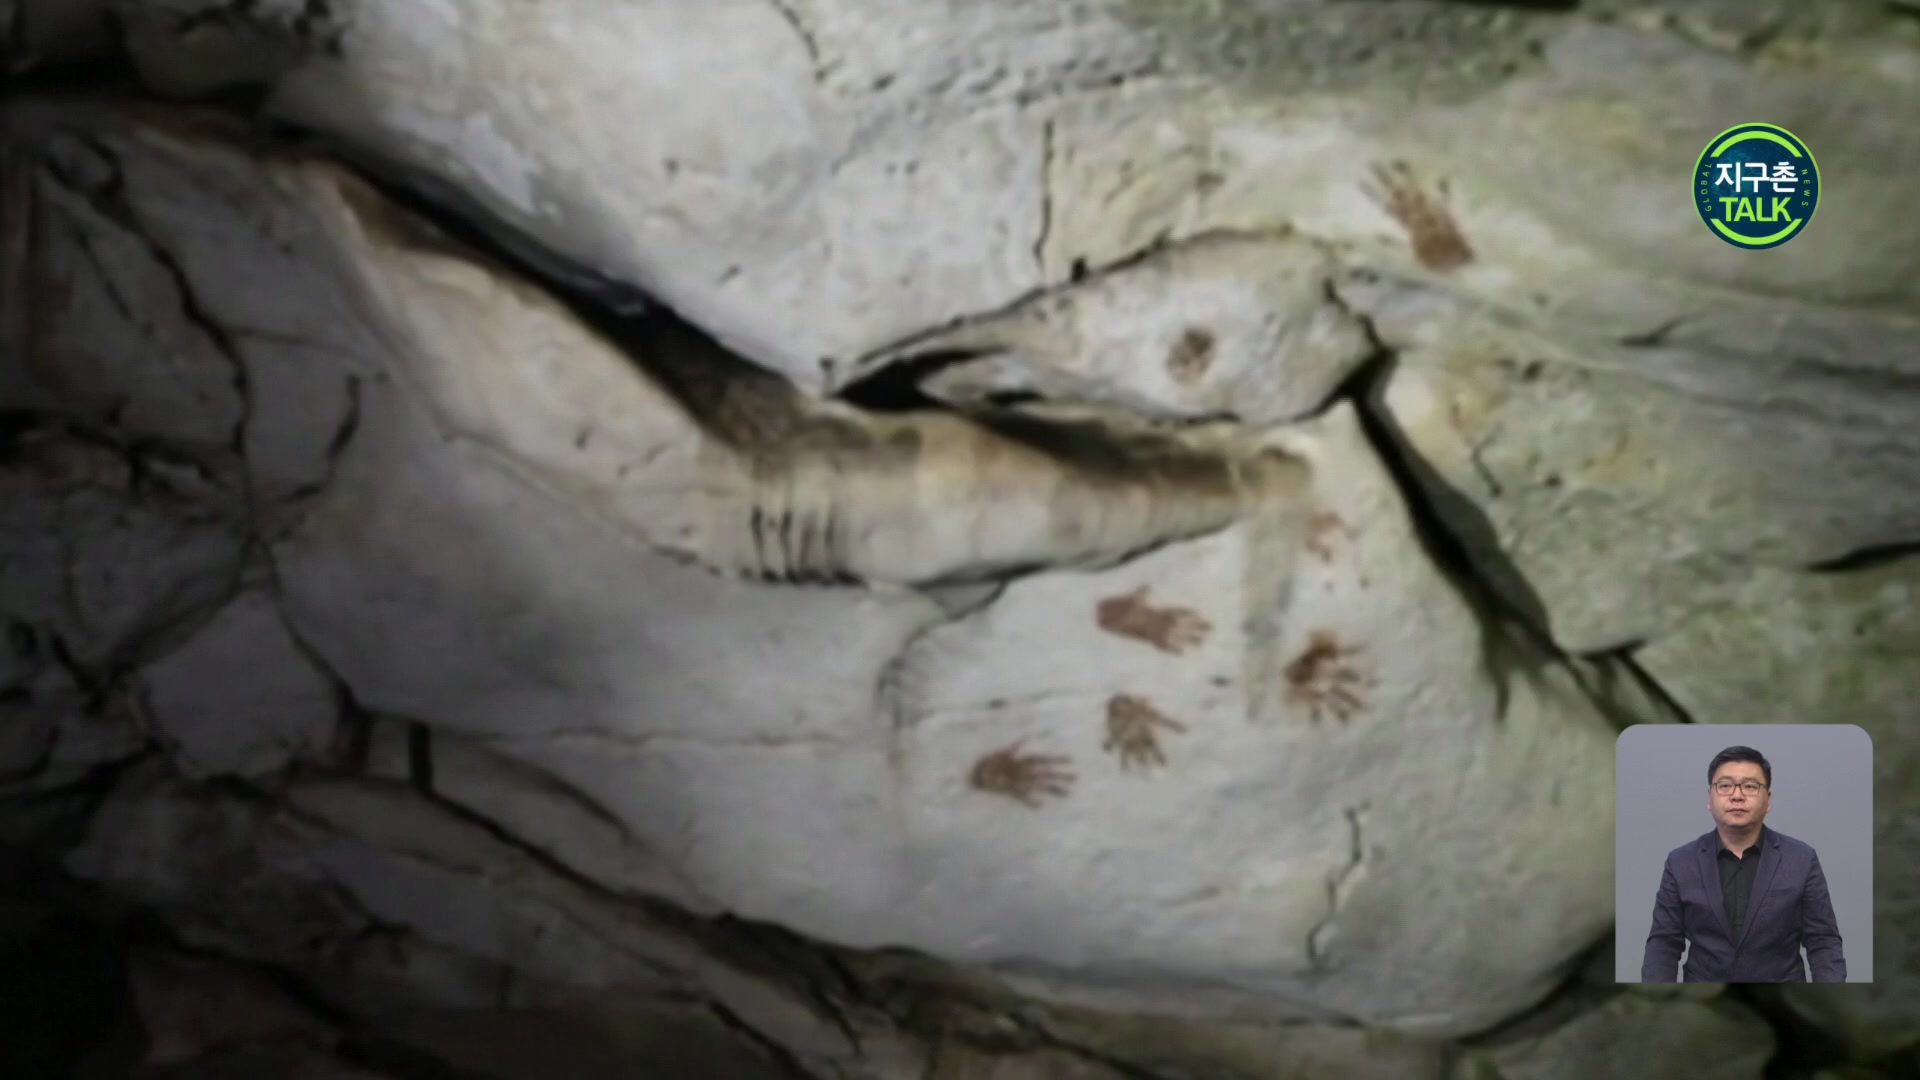 [지구촌 Talk] 멕시코 동굴서 마야인 손자국 무더기 발견